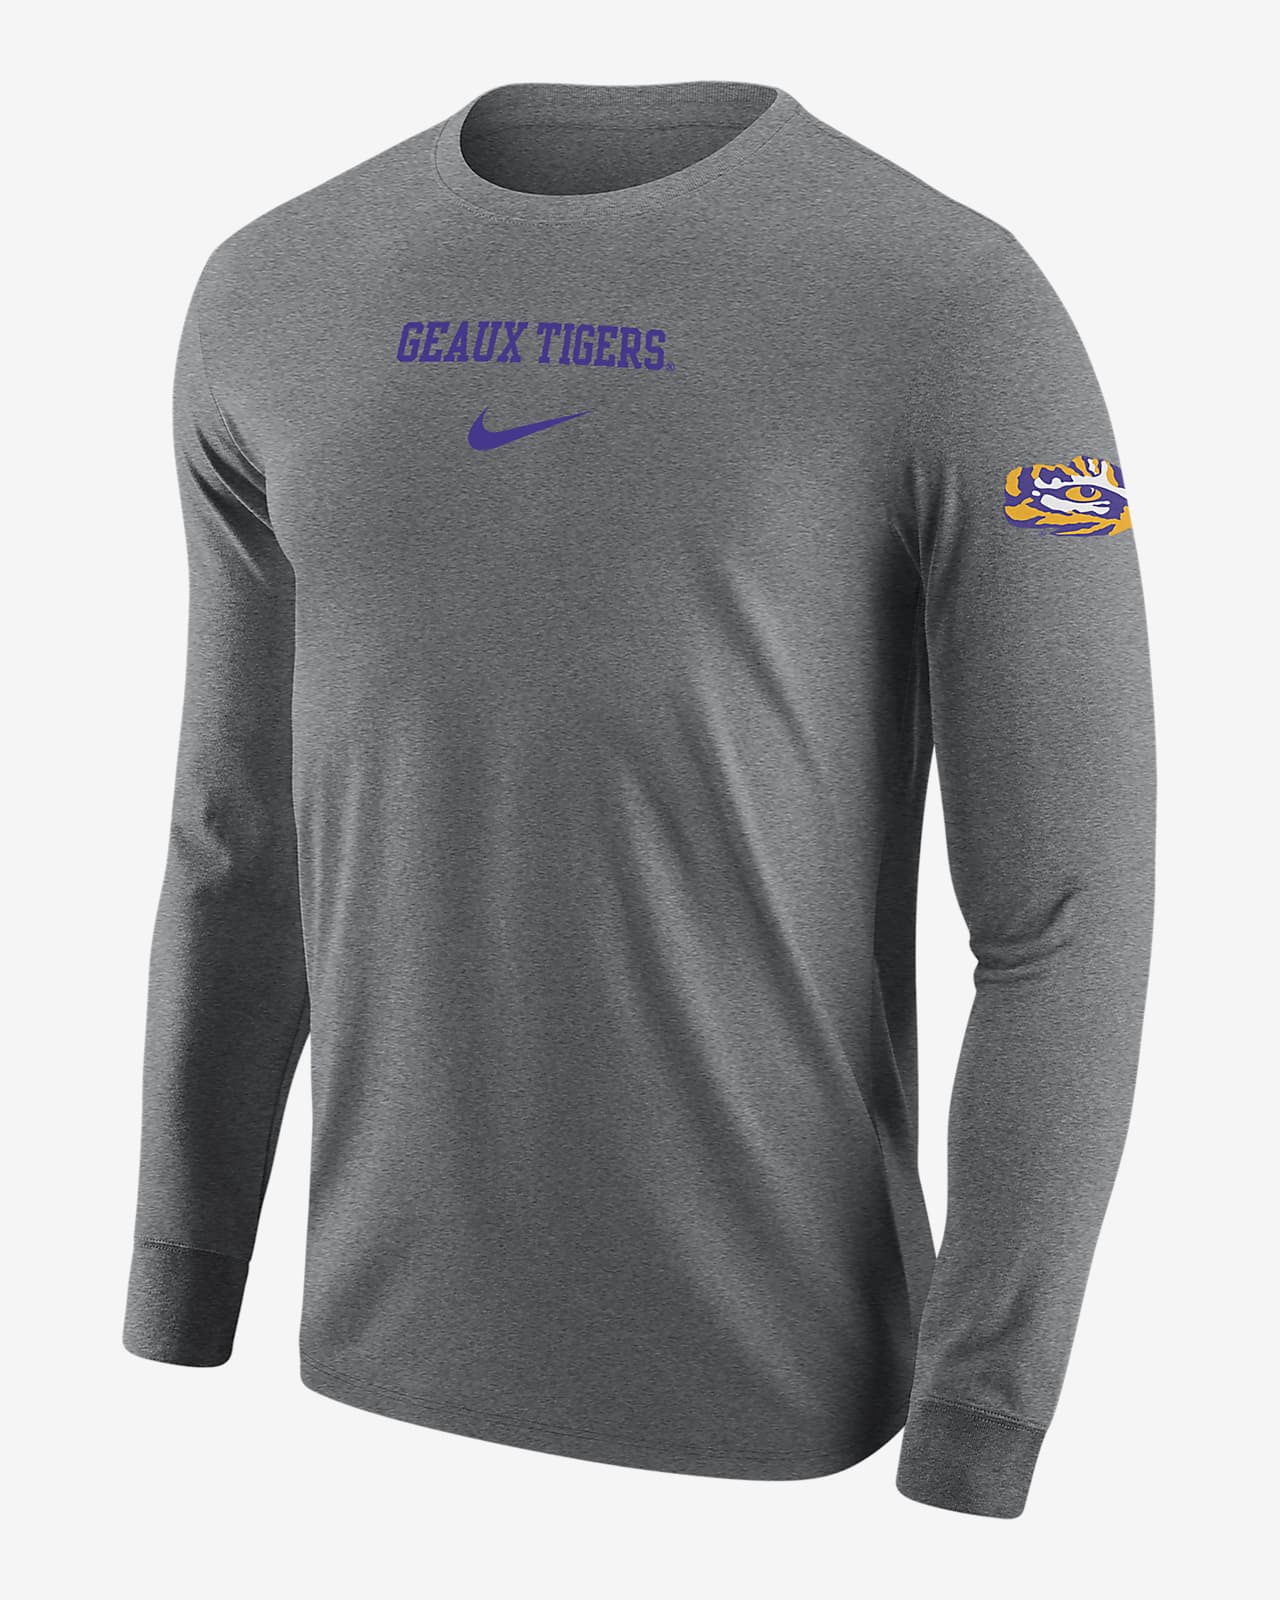 LSU Men's Nike College Long-Sleeve T-Shirt